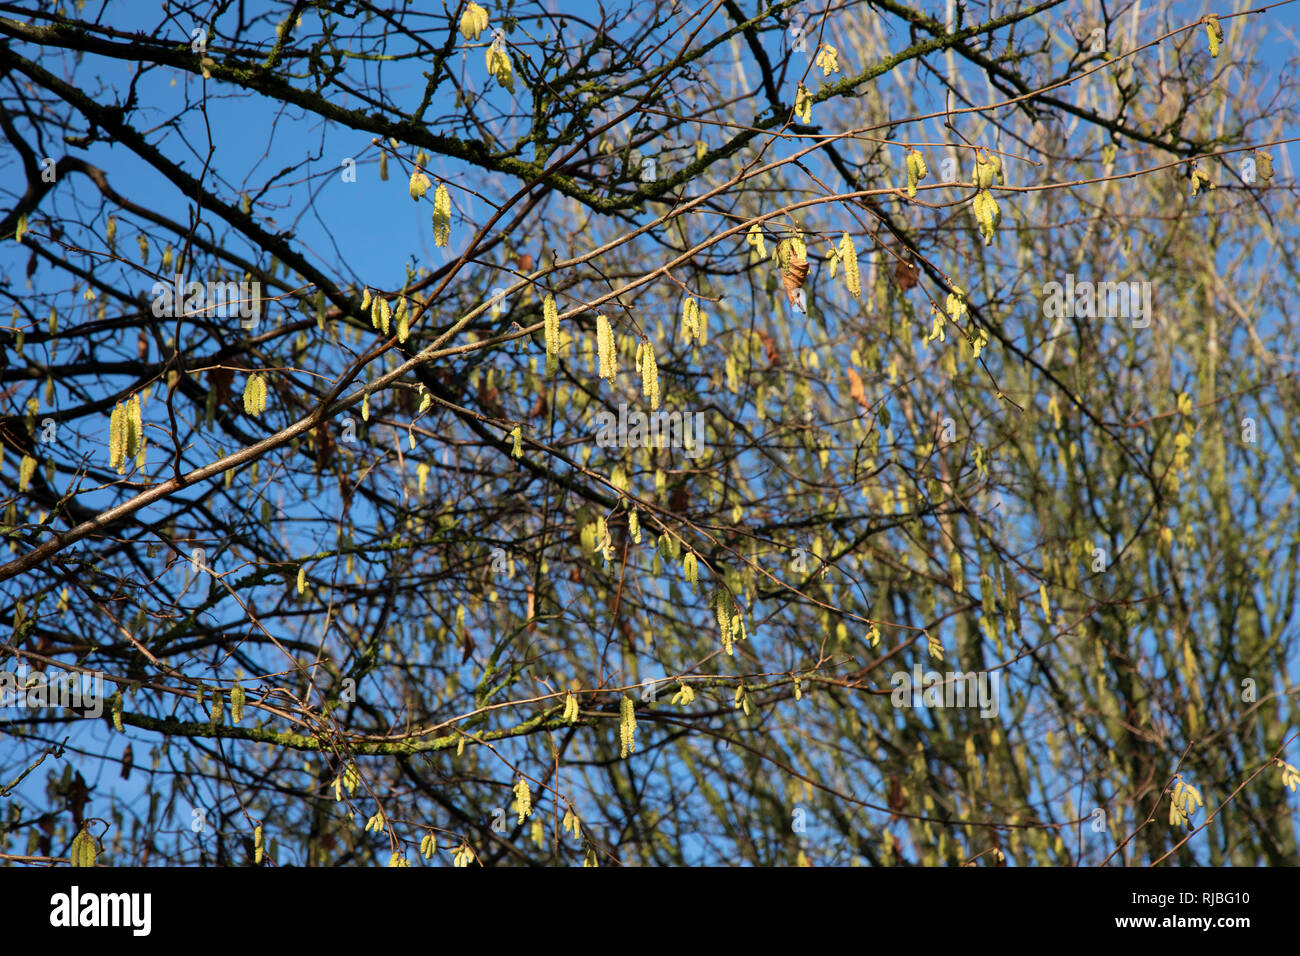 Frühling scheint sehr früh als palmkätzchen im Dezember erscheinen auf Bäume  in einem Park in Birmingham, Vereinigtes Königreich gekommen zu sein.  Catkin Pflanzen gehören viele andere Bäume oder Sträucher wie Birke, Weide,